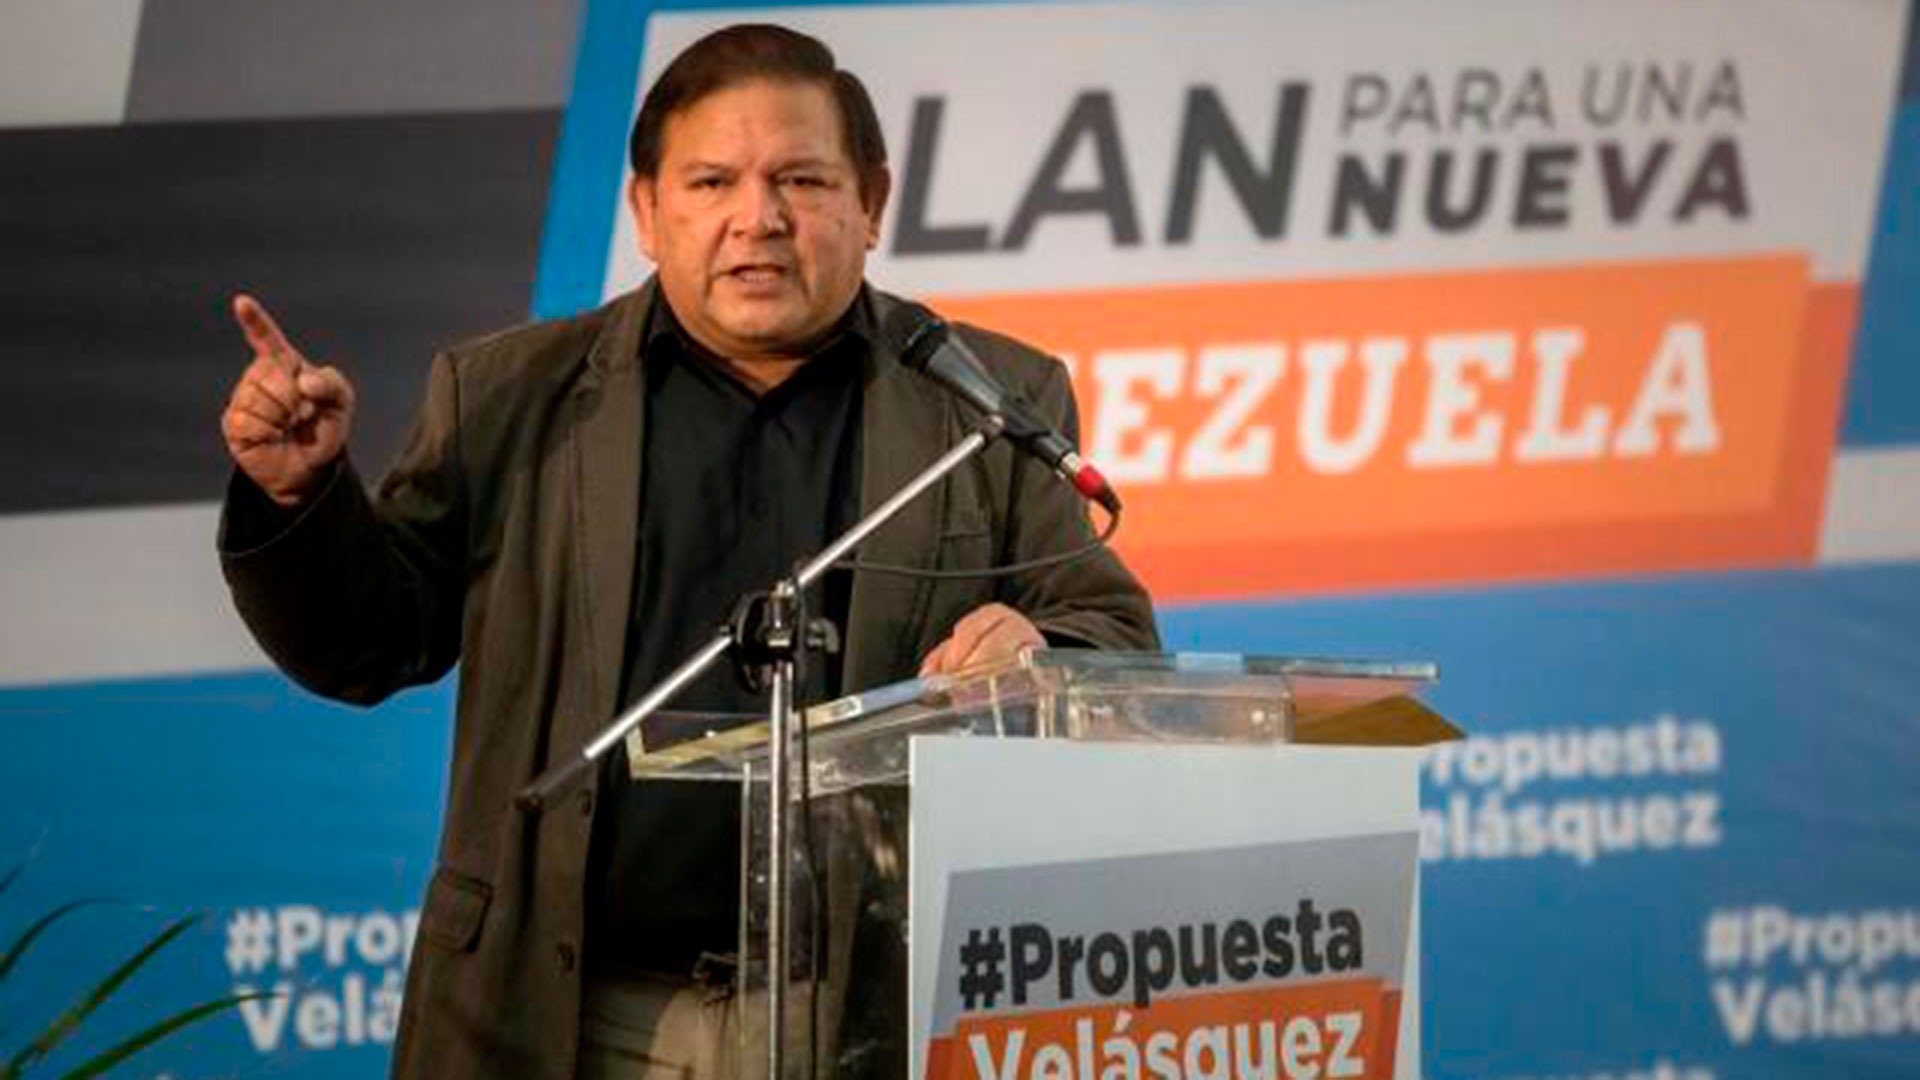 El opositor Andrés Velásquez rechazó este domingo el apoyo técnico del Consejo Nacional Electoral (CNE) de Venezuela en las primarias internas del antichavismo. (EFE)